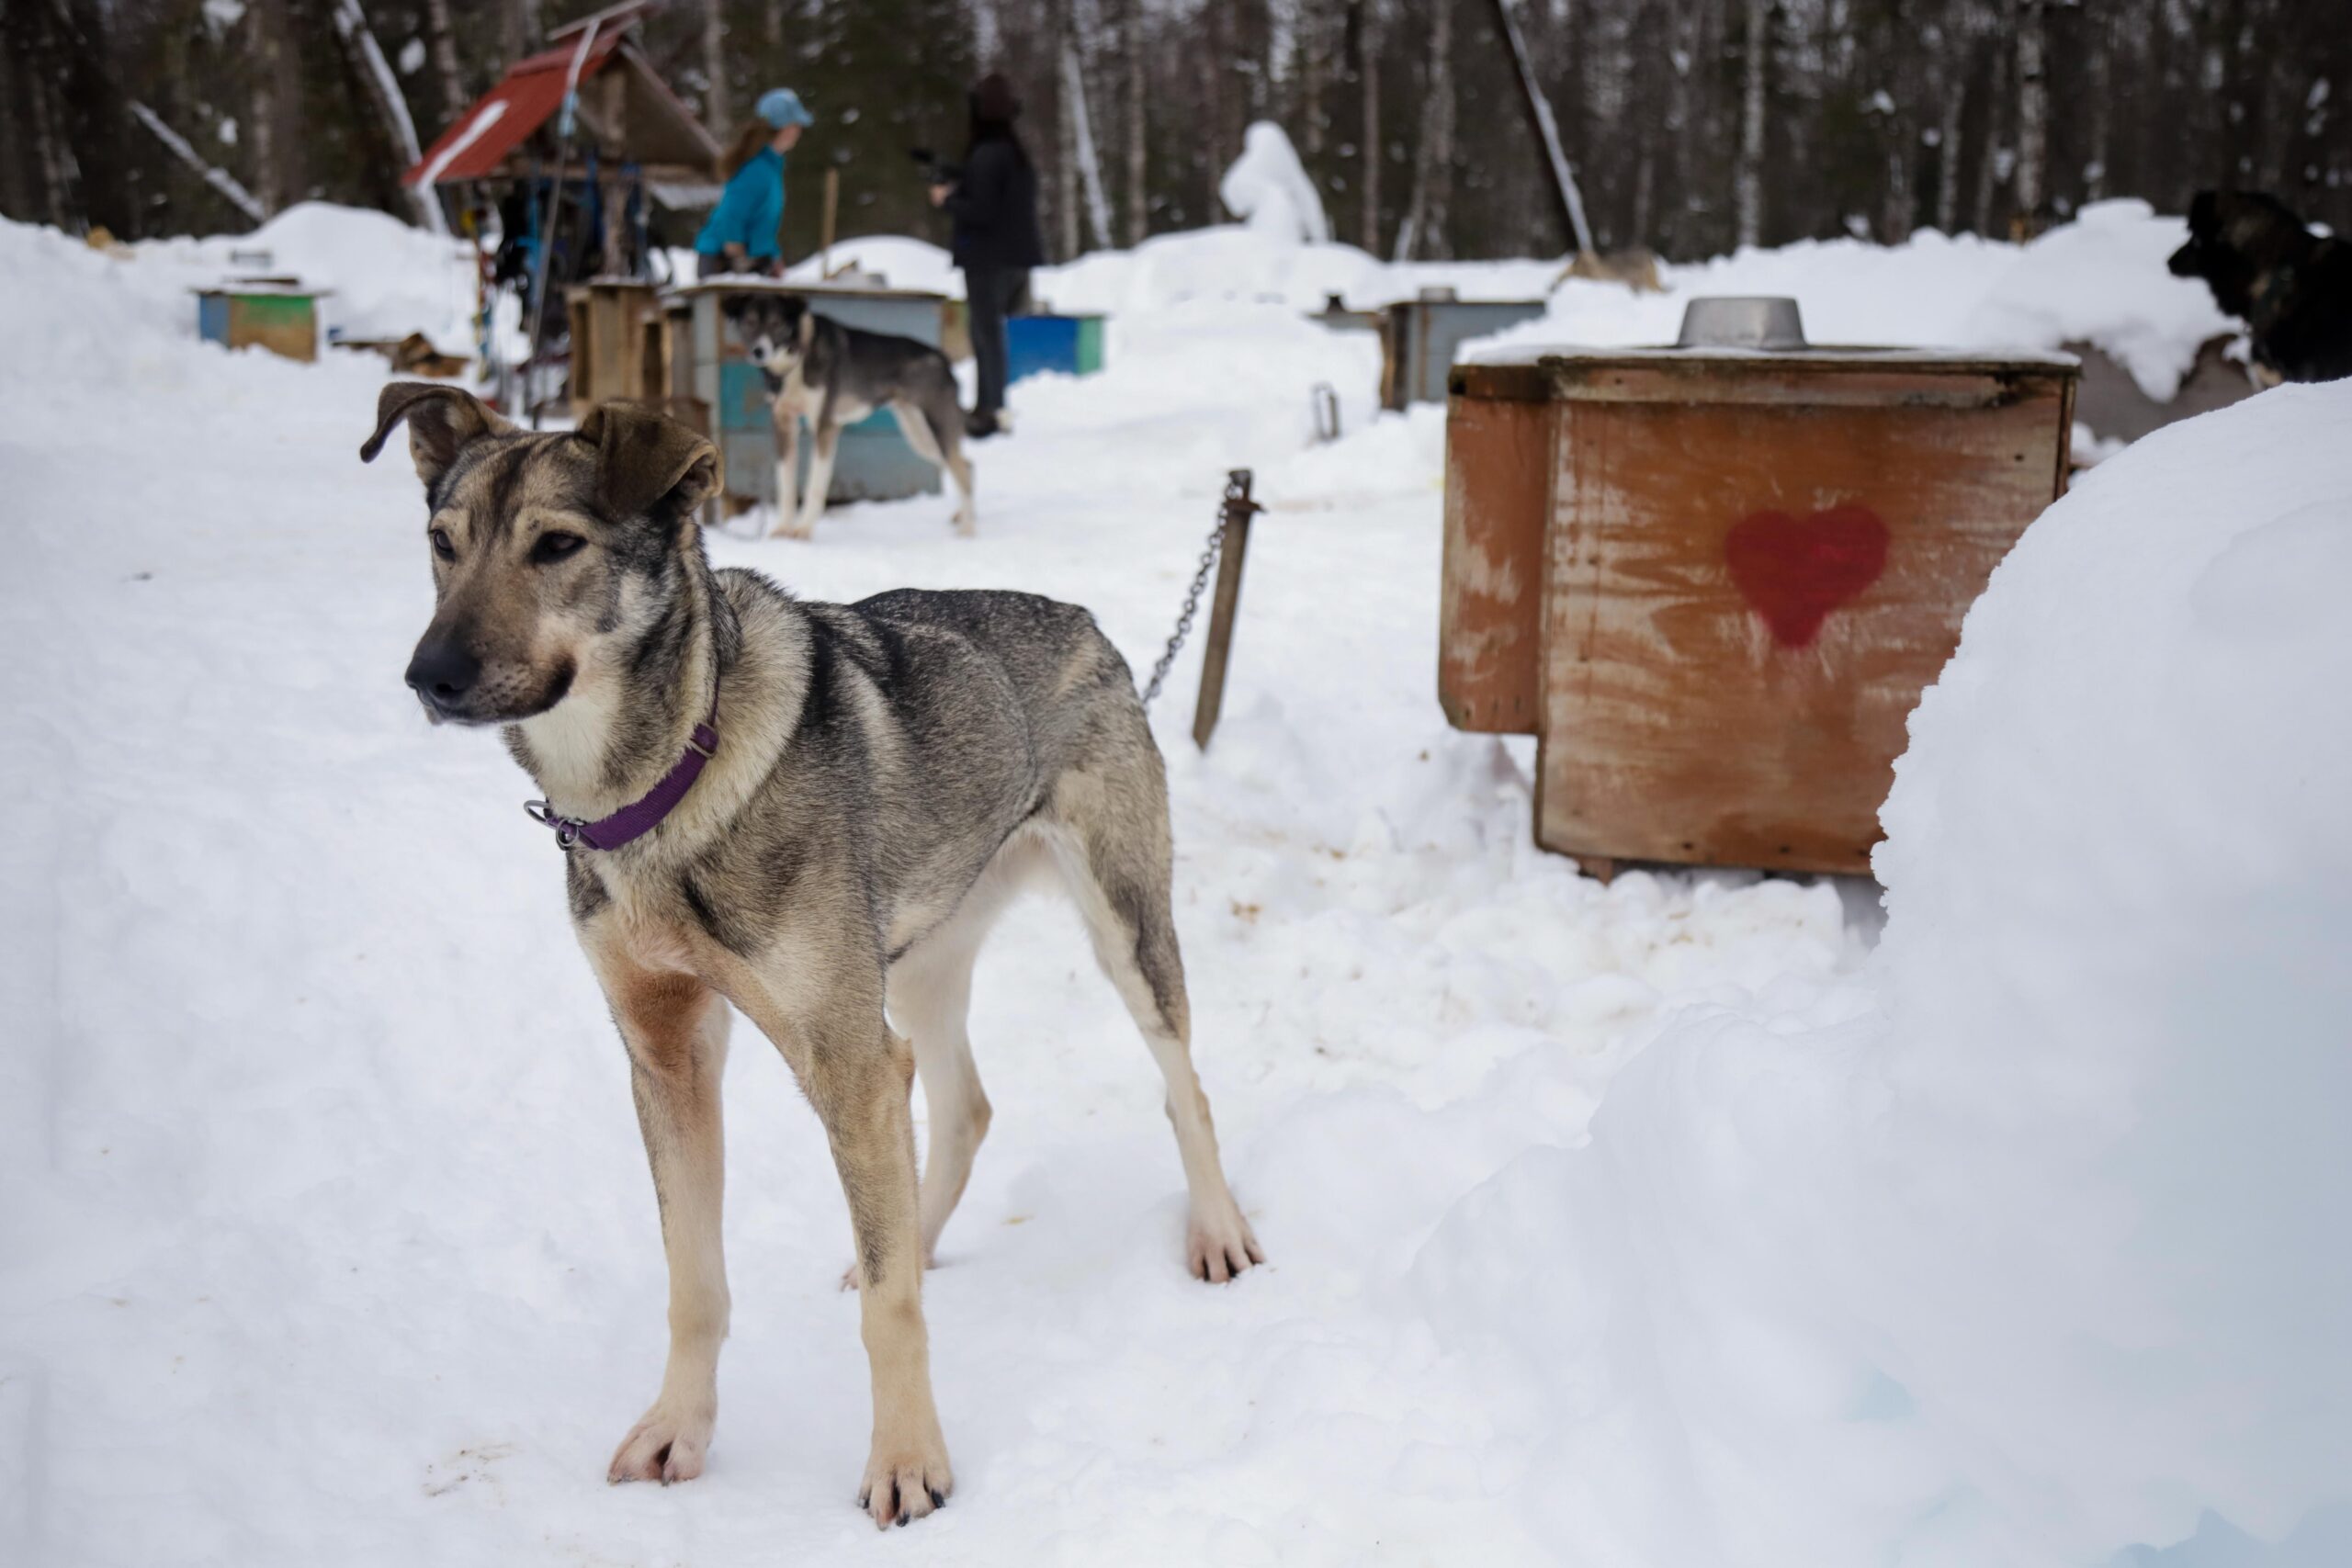 a dog in a snowy dog yard